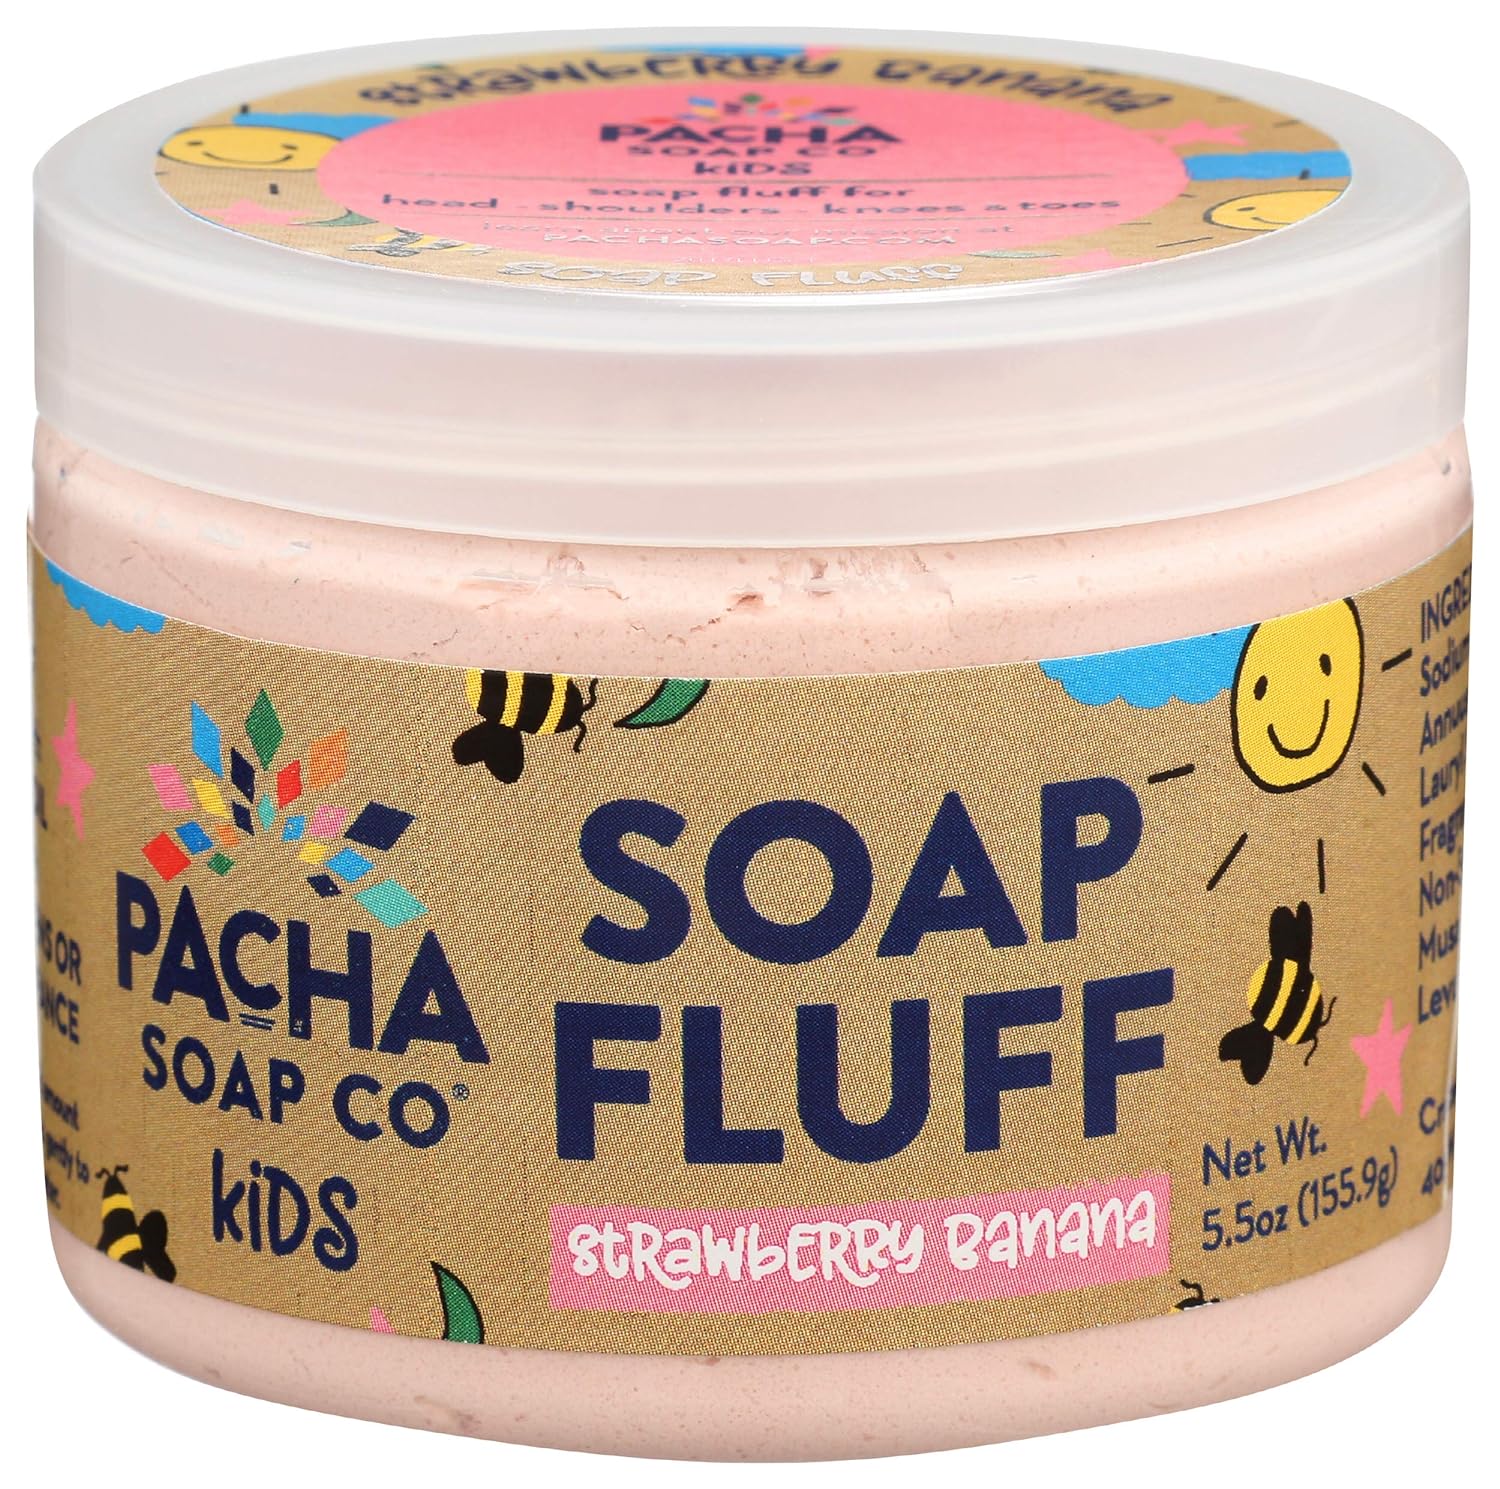 Esupli.com  PACHA SOAP Strawberry Banana Soap uff, 5.5 